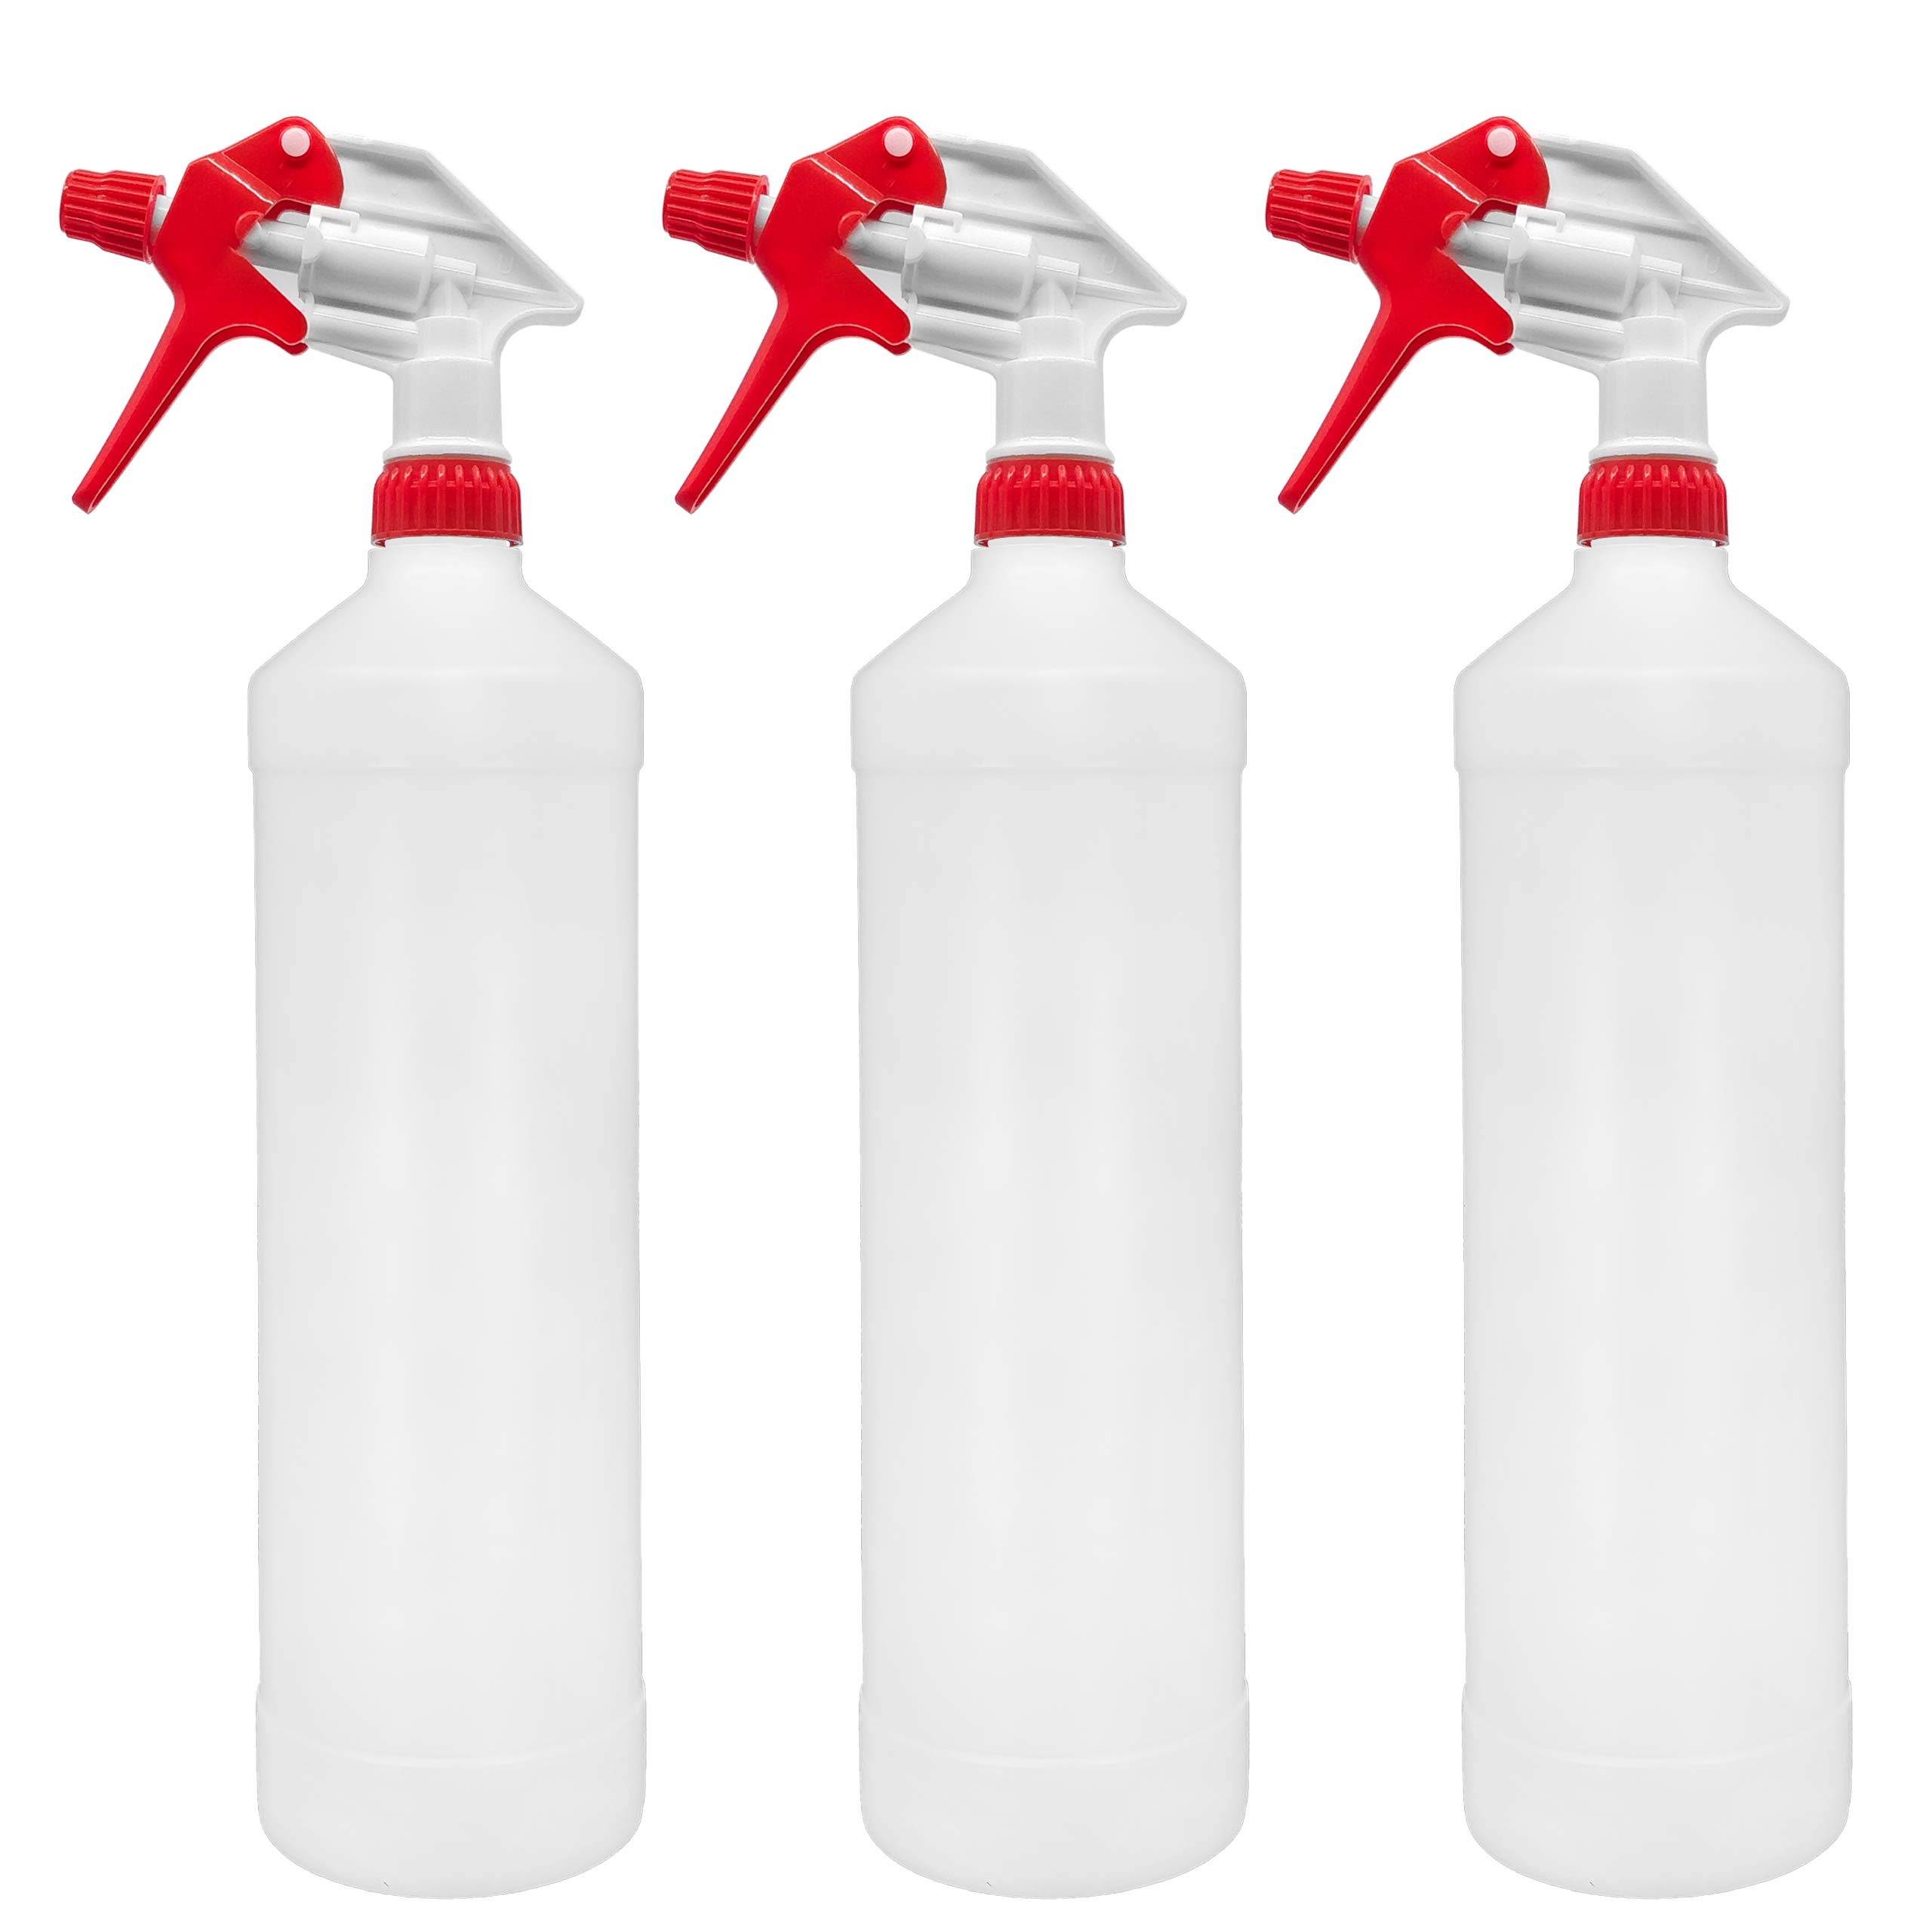 BiOHY Sprühflasche 1 Liter (3er-Set) | Chemiebeständiger Pumpsprüher für Reinigungsmittel, Öl und mehr | Pumpflaschen für Handwerk, Hobby, Kosmetik und Haushalt